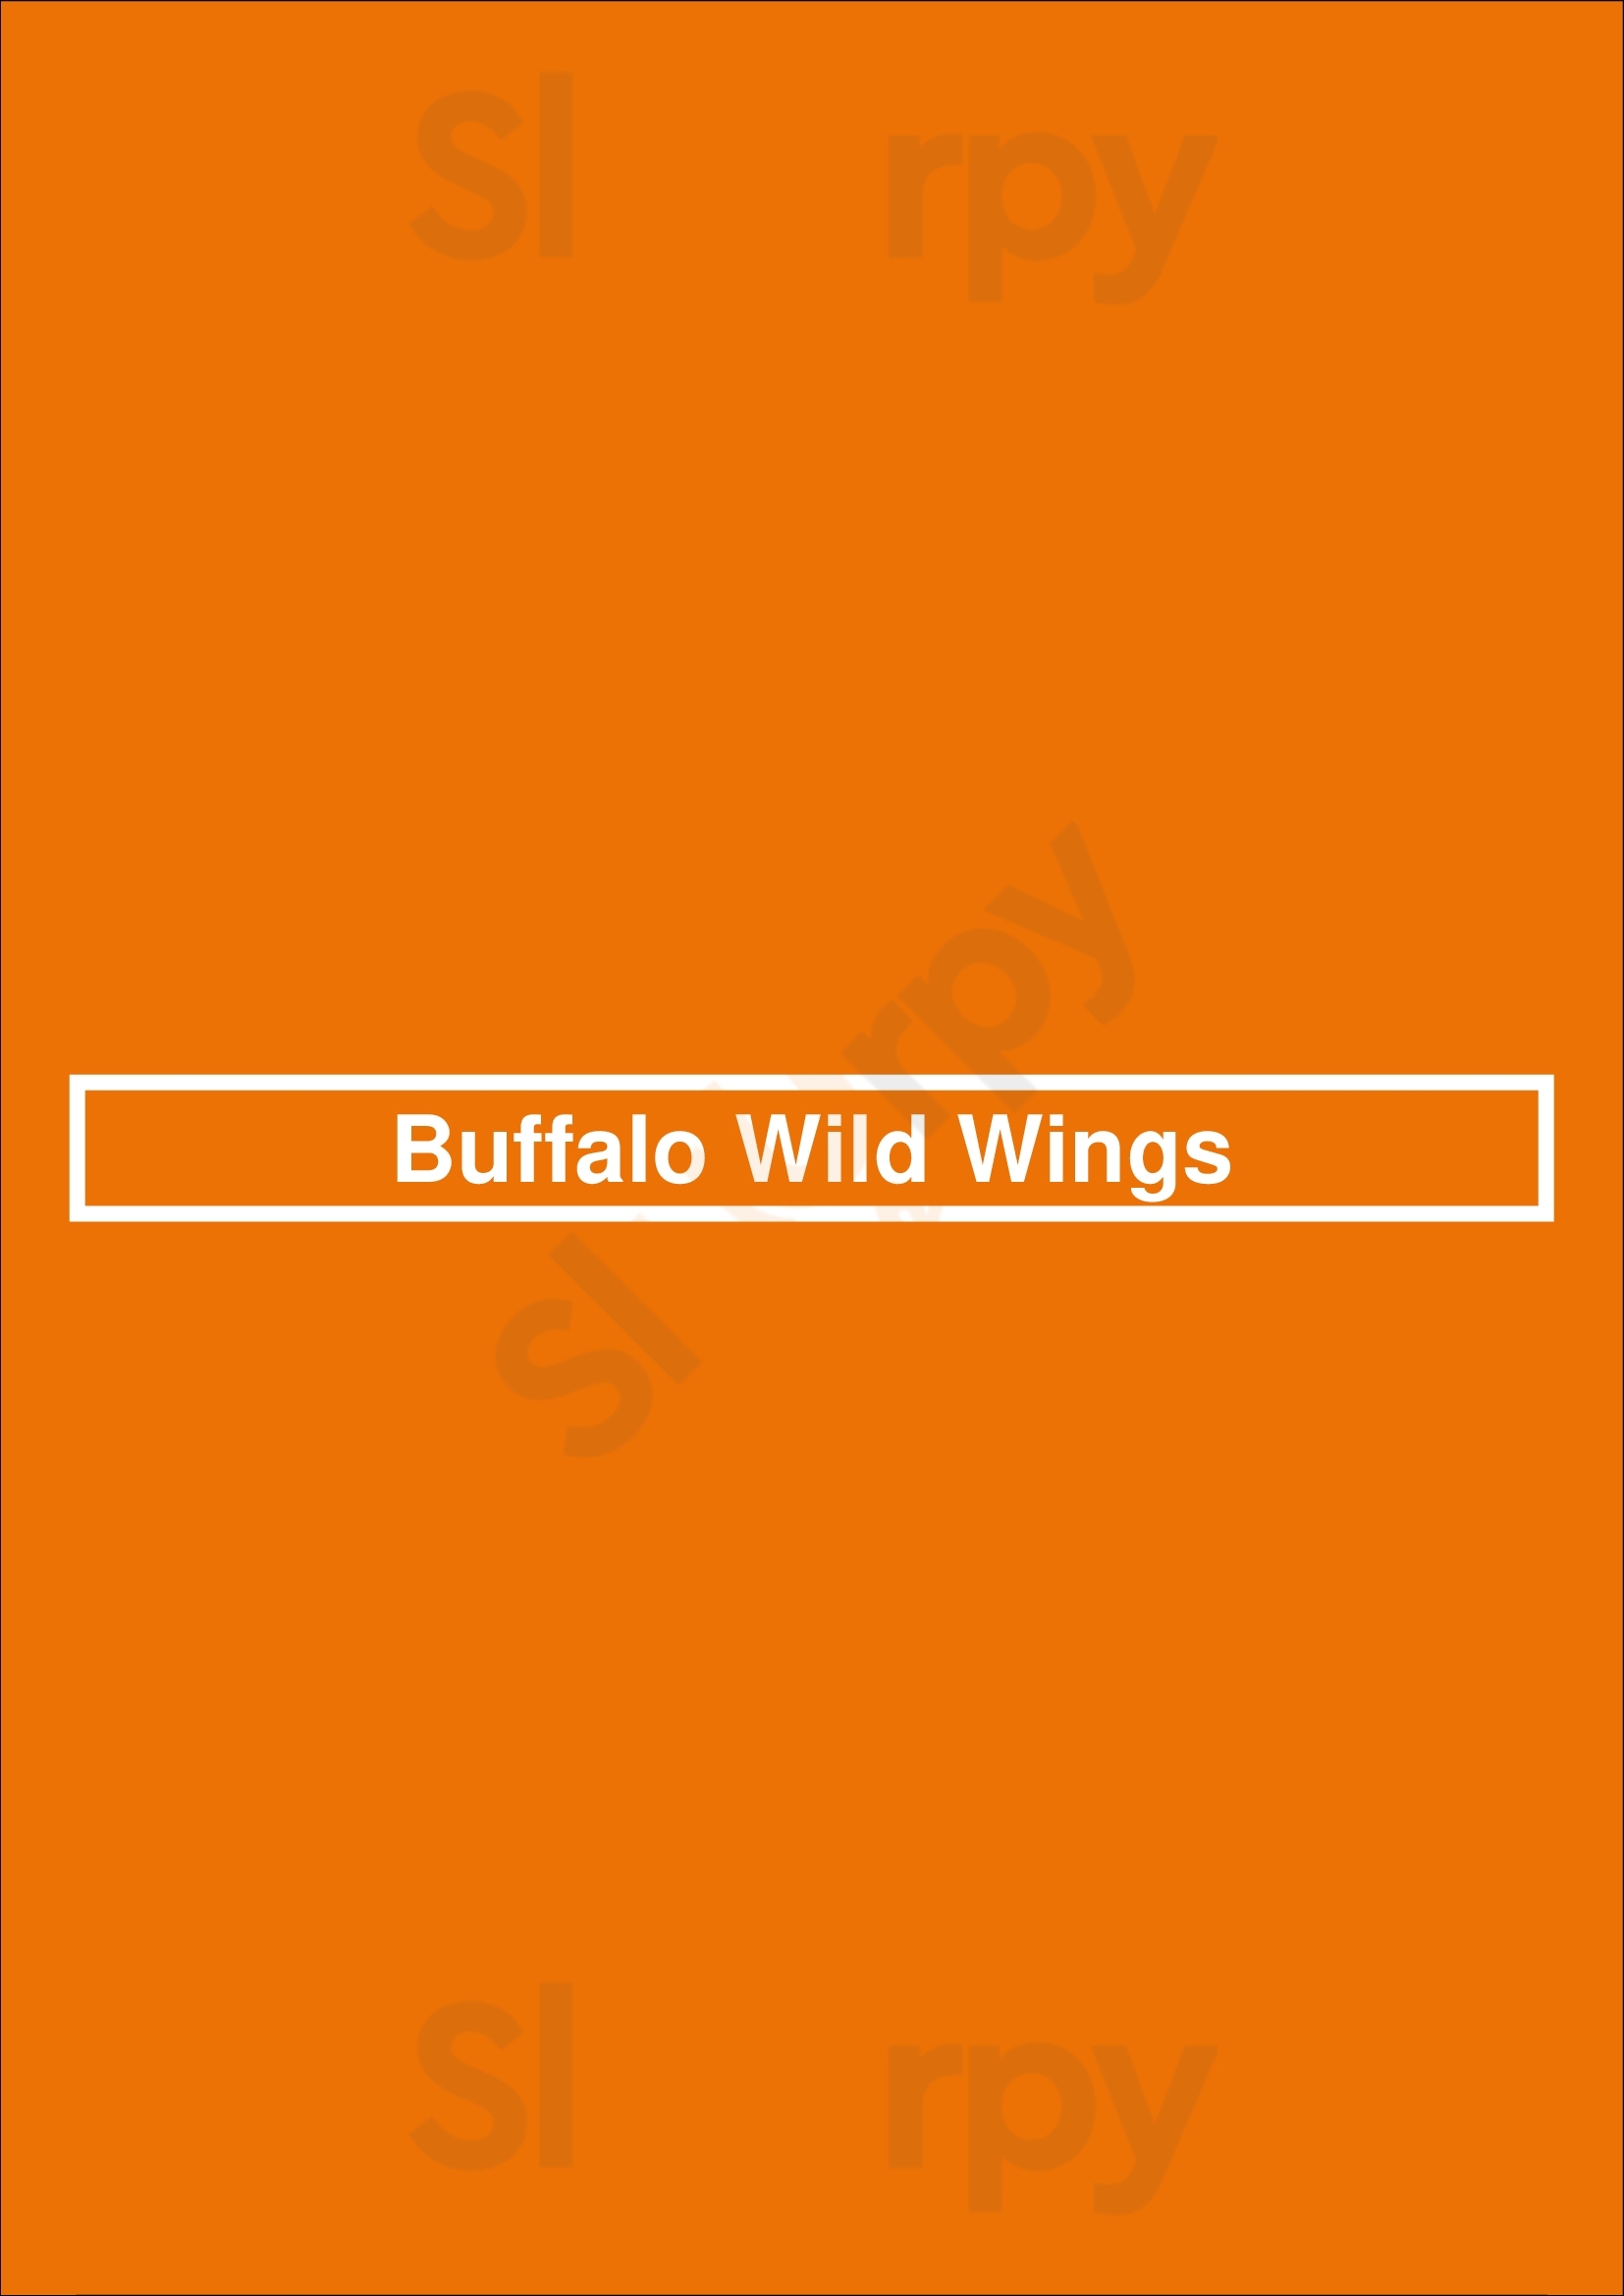 Buffalo Wild Wings Cleveland Menu - 1